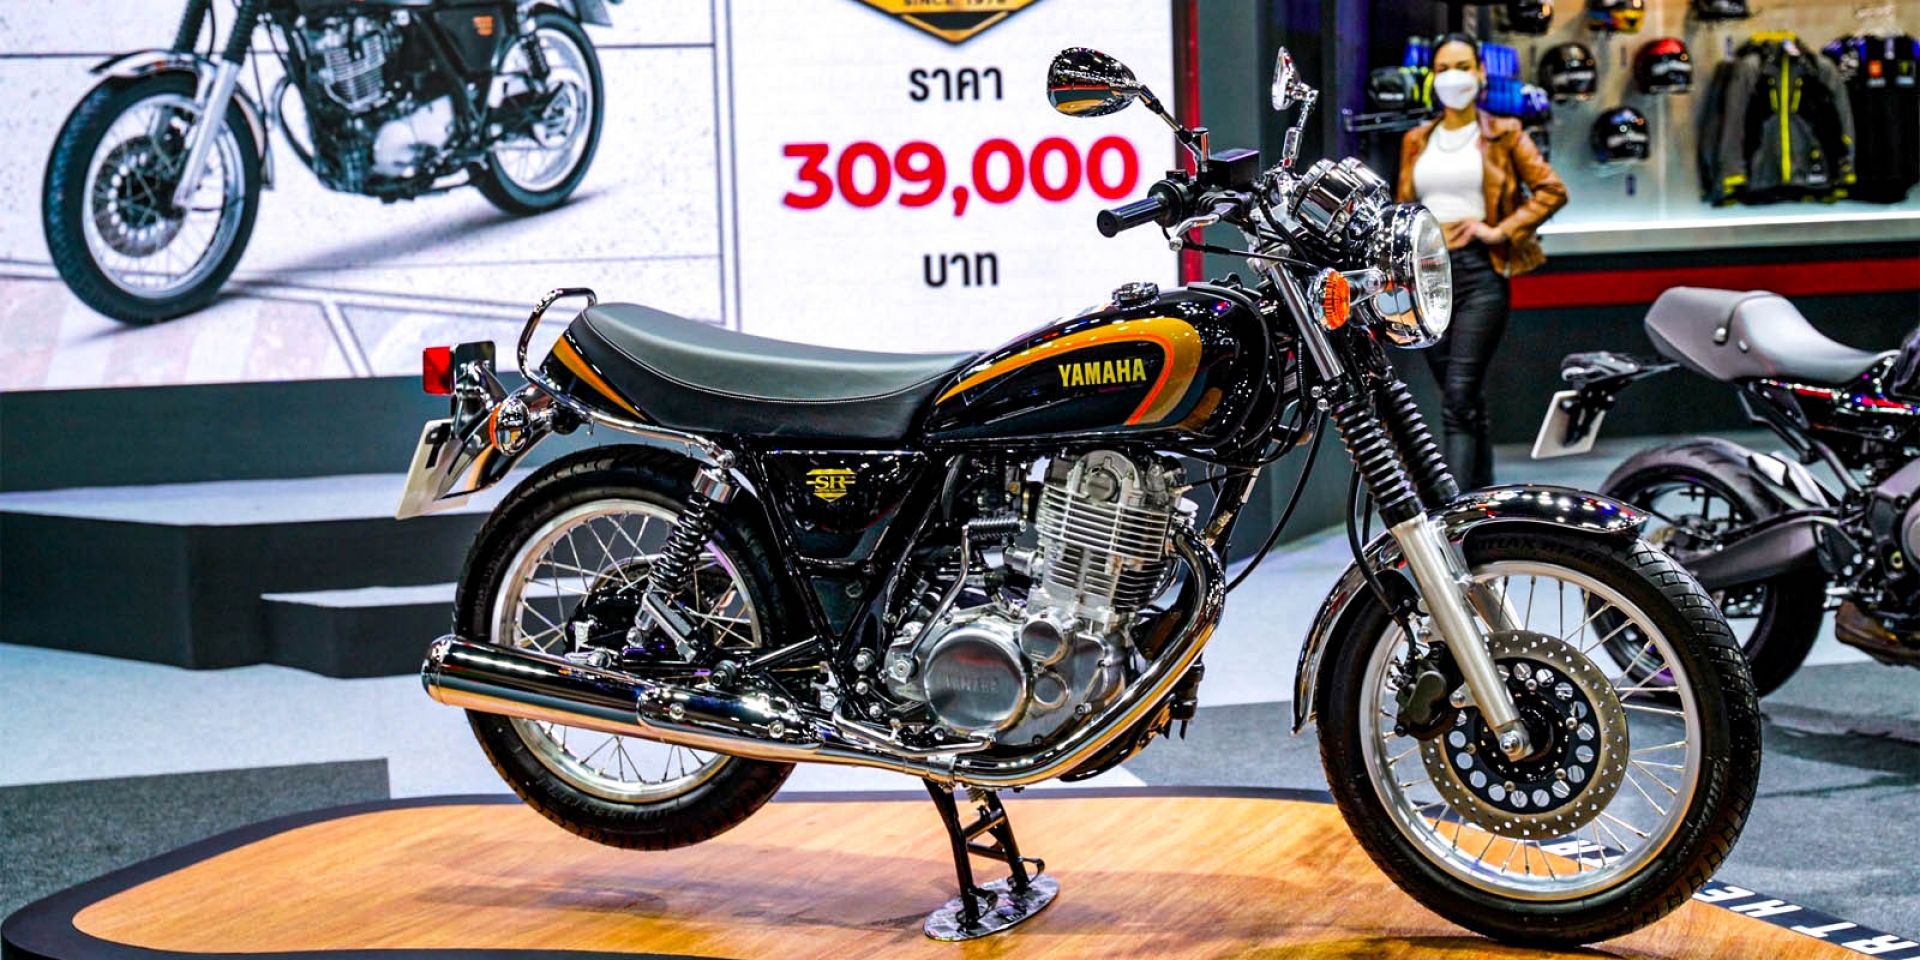 說好的停產呢？YAMAHA泰國發表SR400 44週年紀念版，限量400台發售